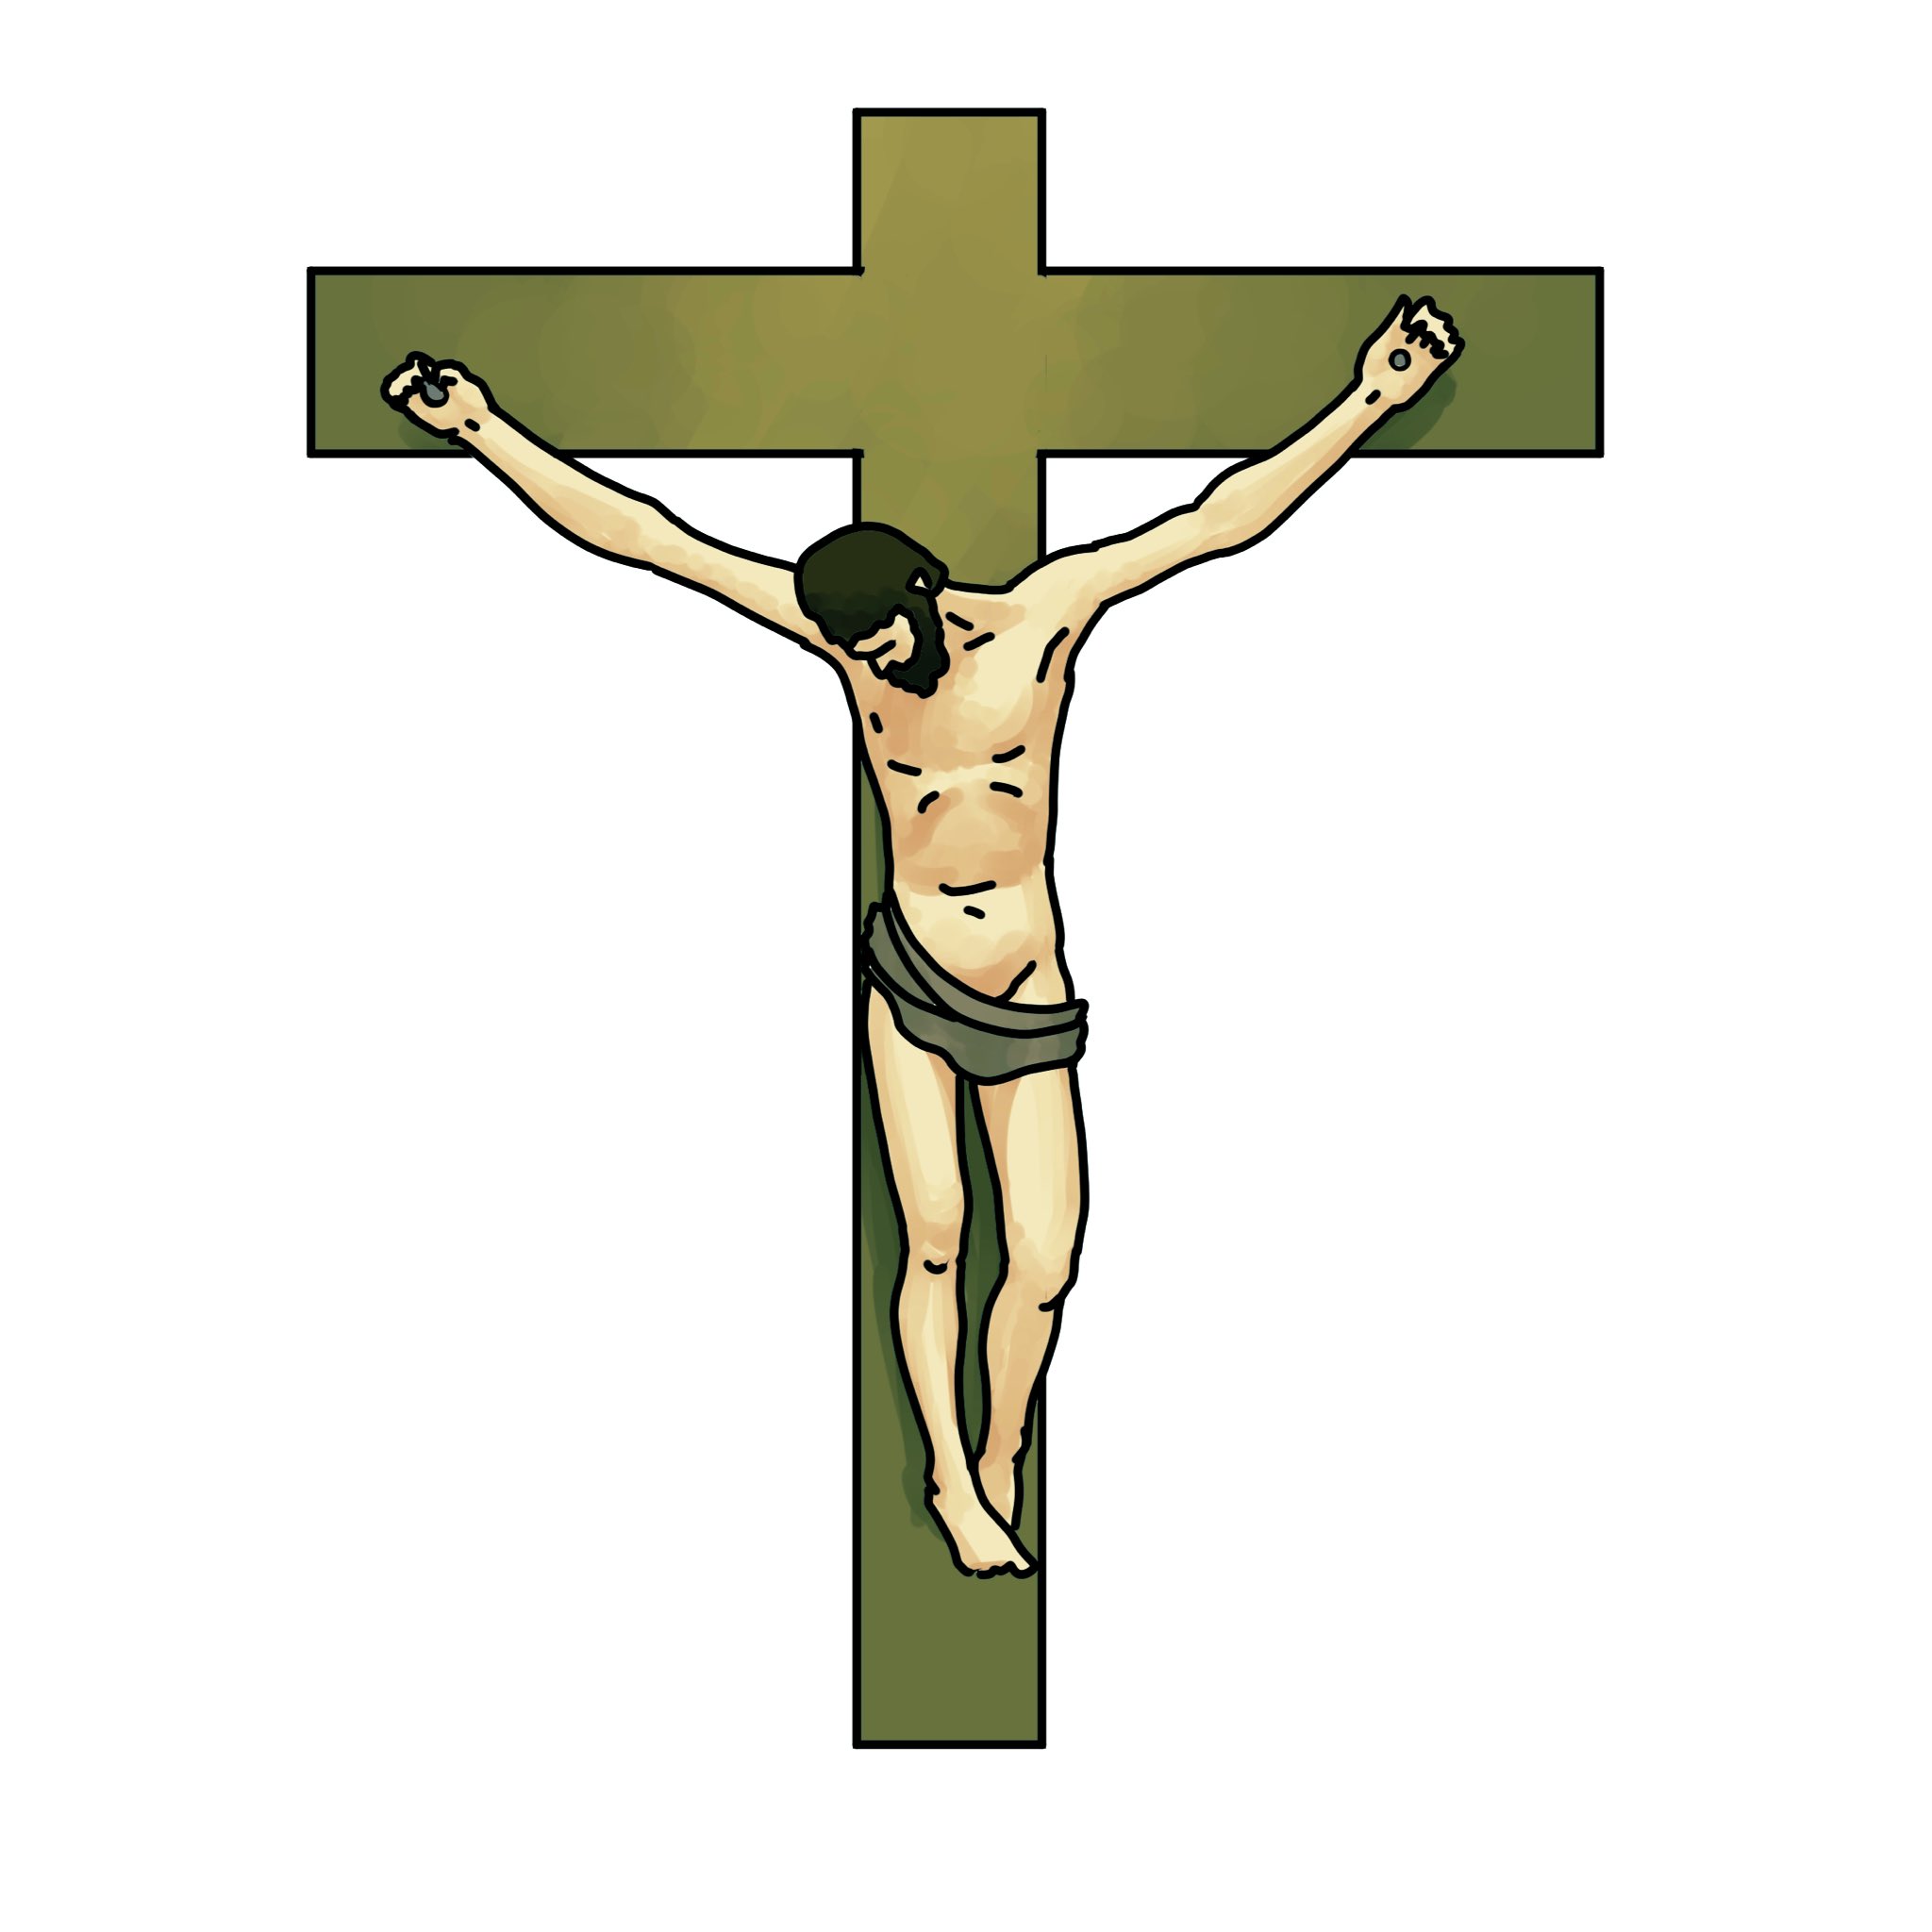 毎日イラストイタリア語 磔刑 Crocifisso クロチフィッソ Croce 十字架 とfiggere 固定する 打ち込む の過去分詞fissoという単語から成り立っています 多くの芸術家が磔刑をモチーフとした作品を制作しており フィレンツェではミケランジェロや